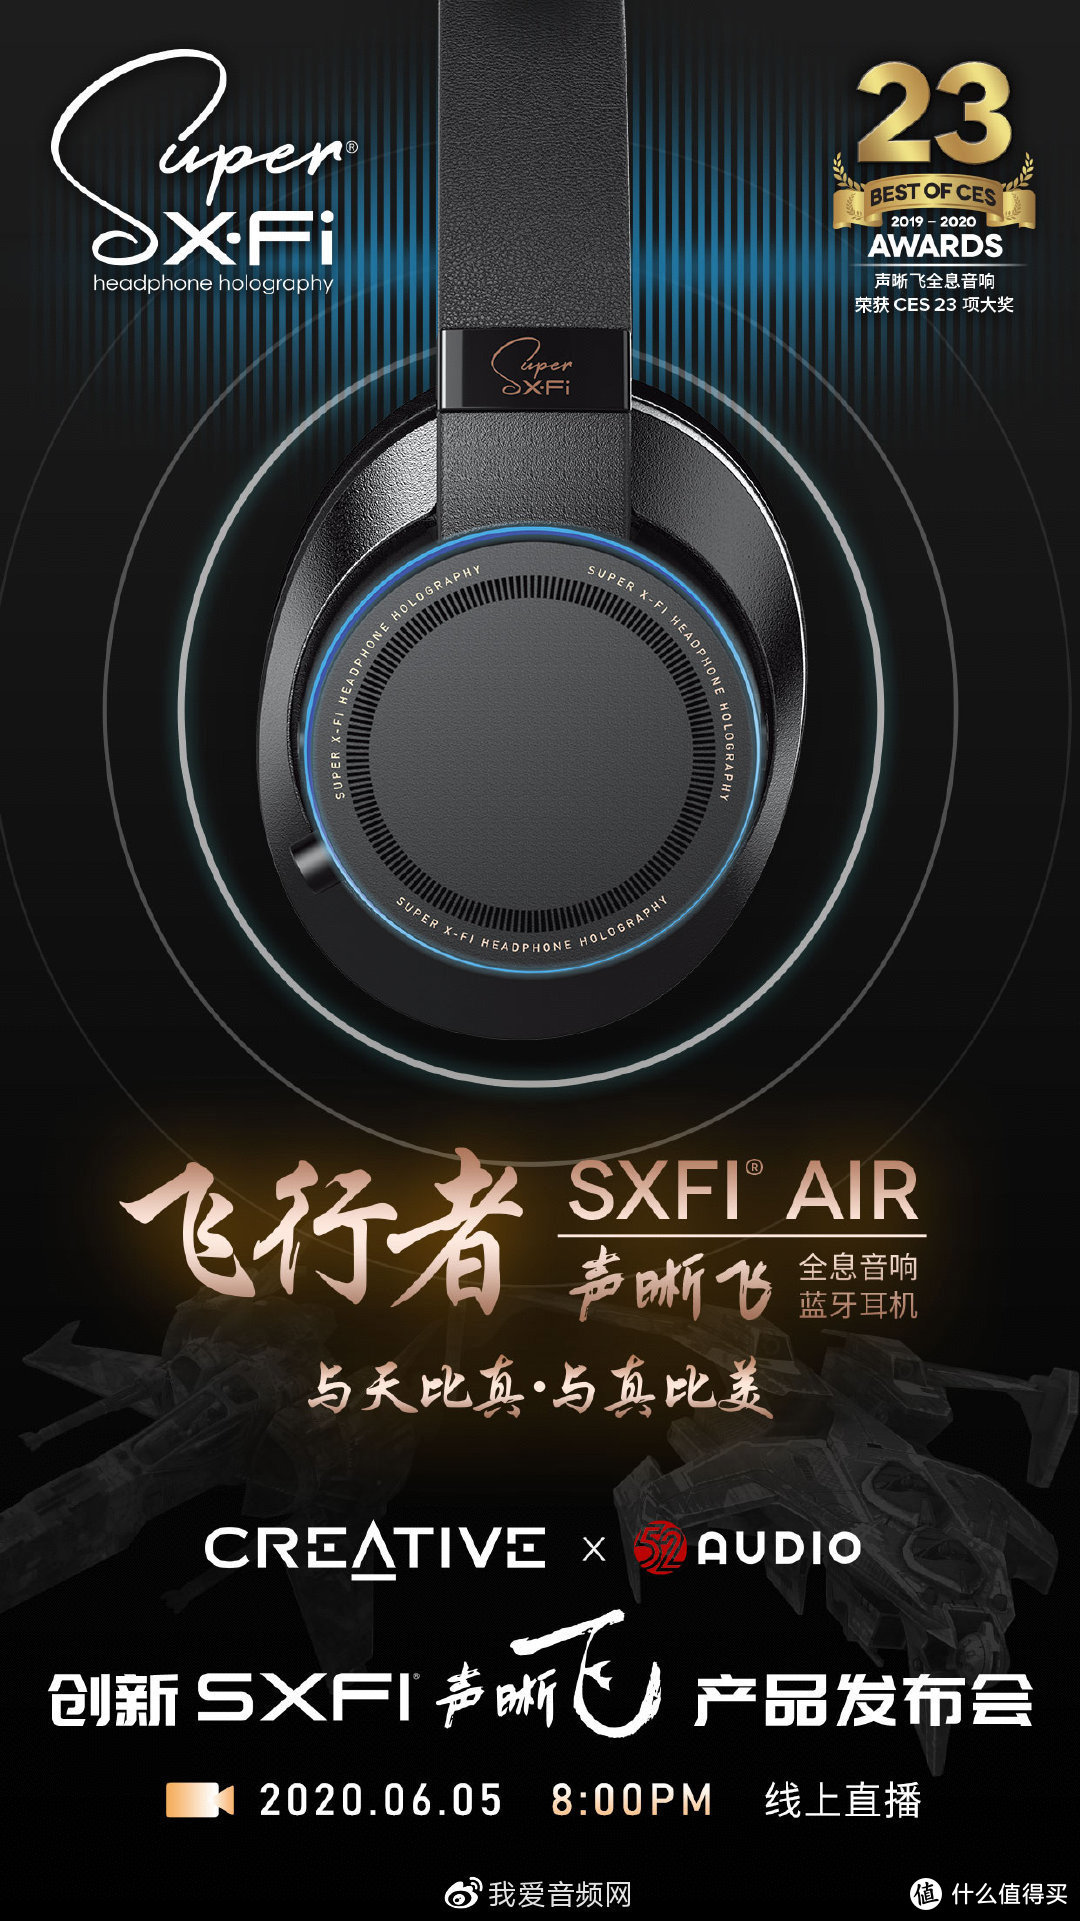 6月5日，音频老大哥创新科技带着SXFI声晰飞新品来了！